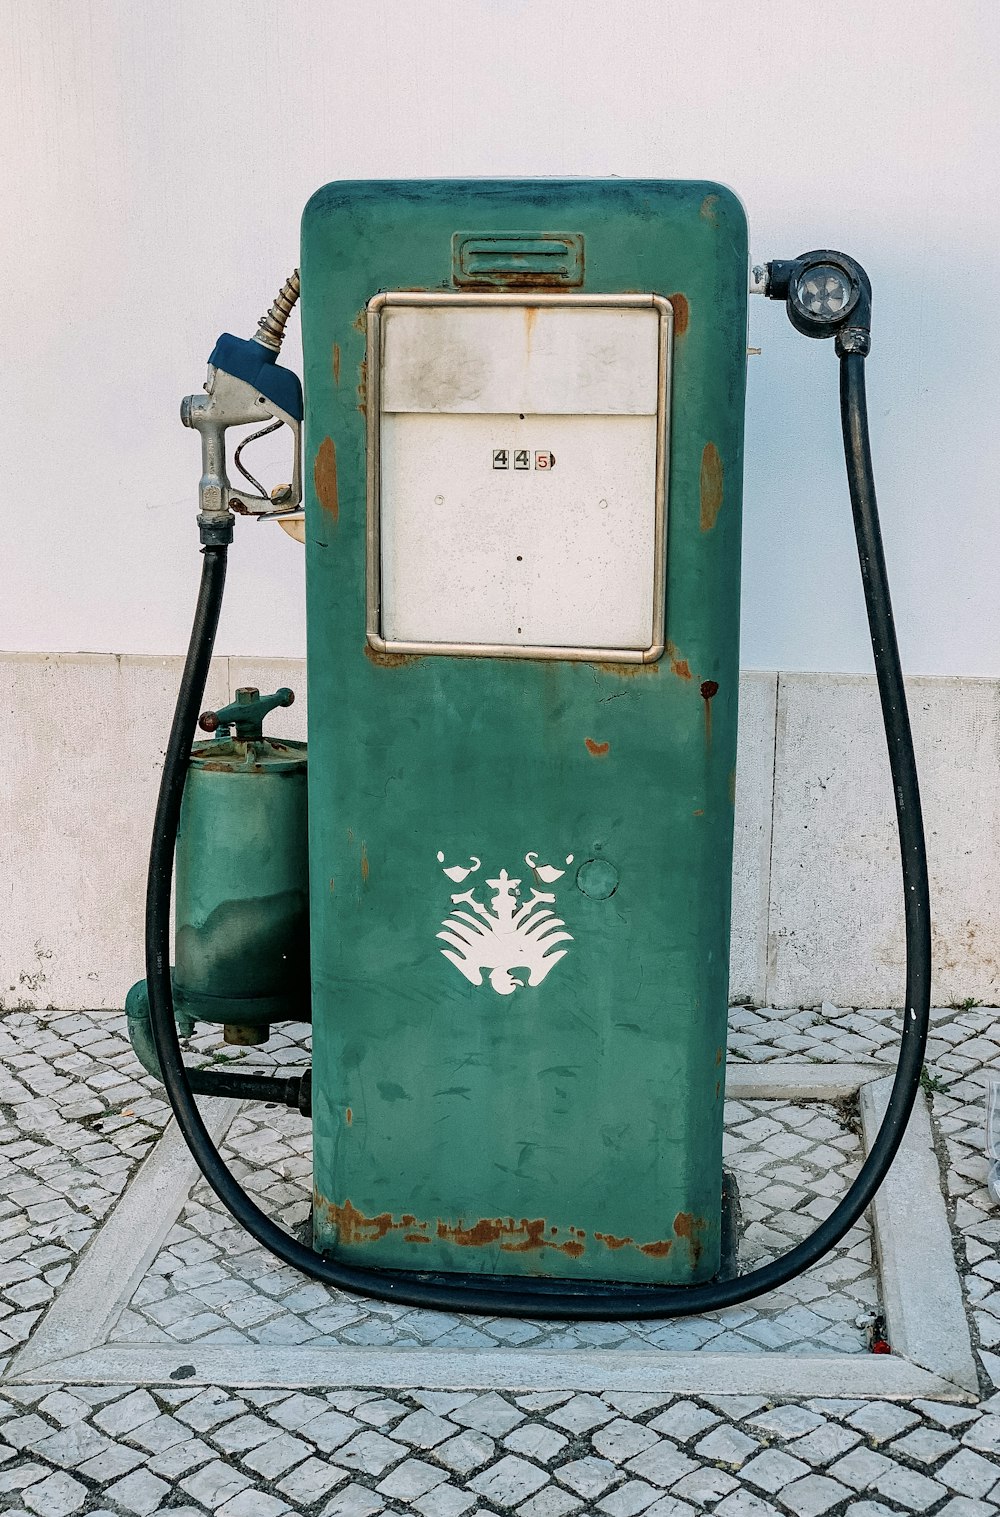 bomba de gás verde e branca